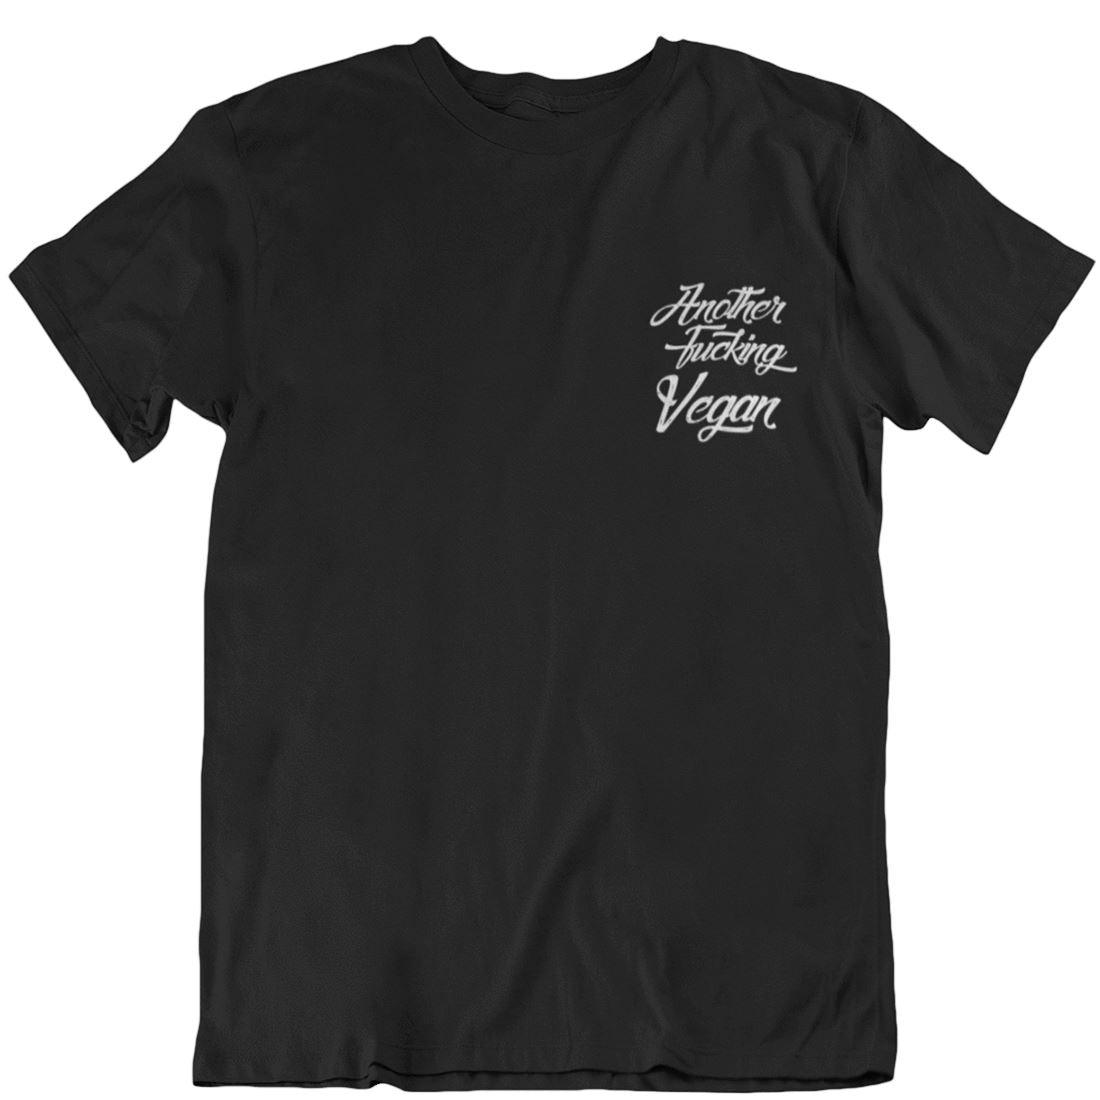 Another fucking vegan - Unisex Organic Shirt - Team Vegan © vegan t shirt